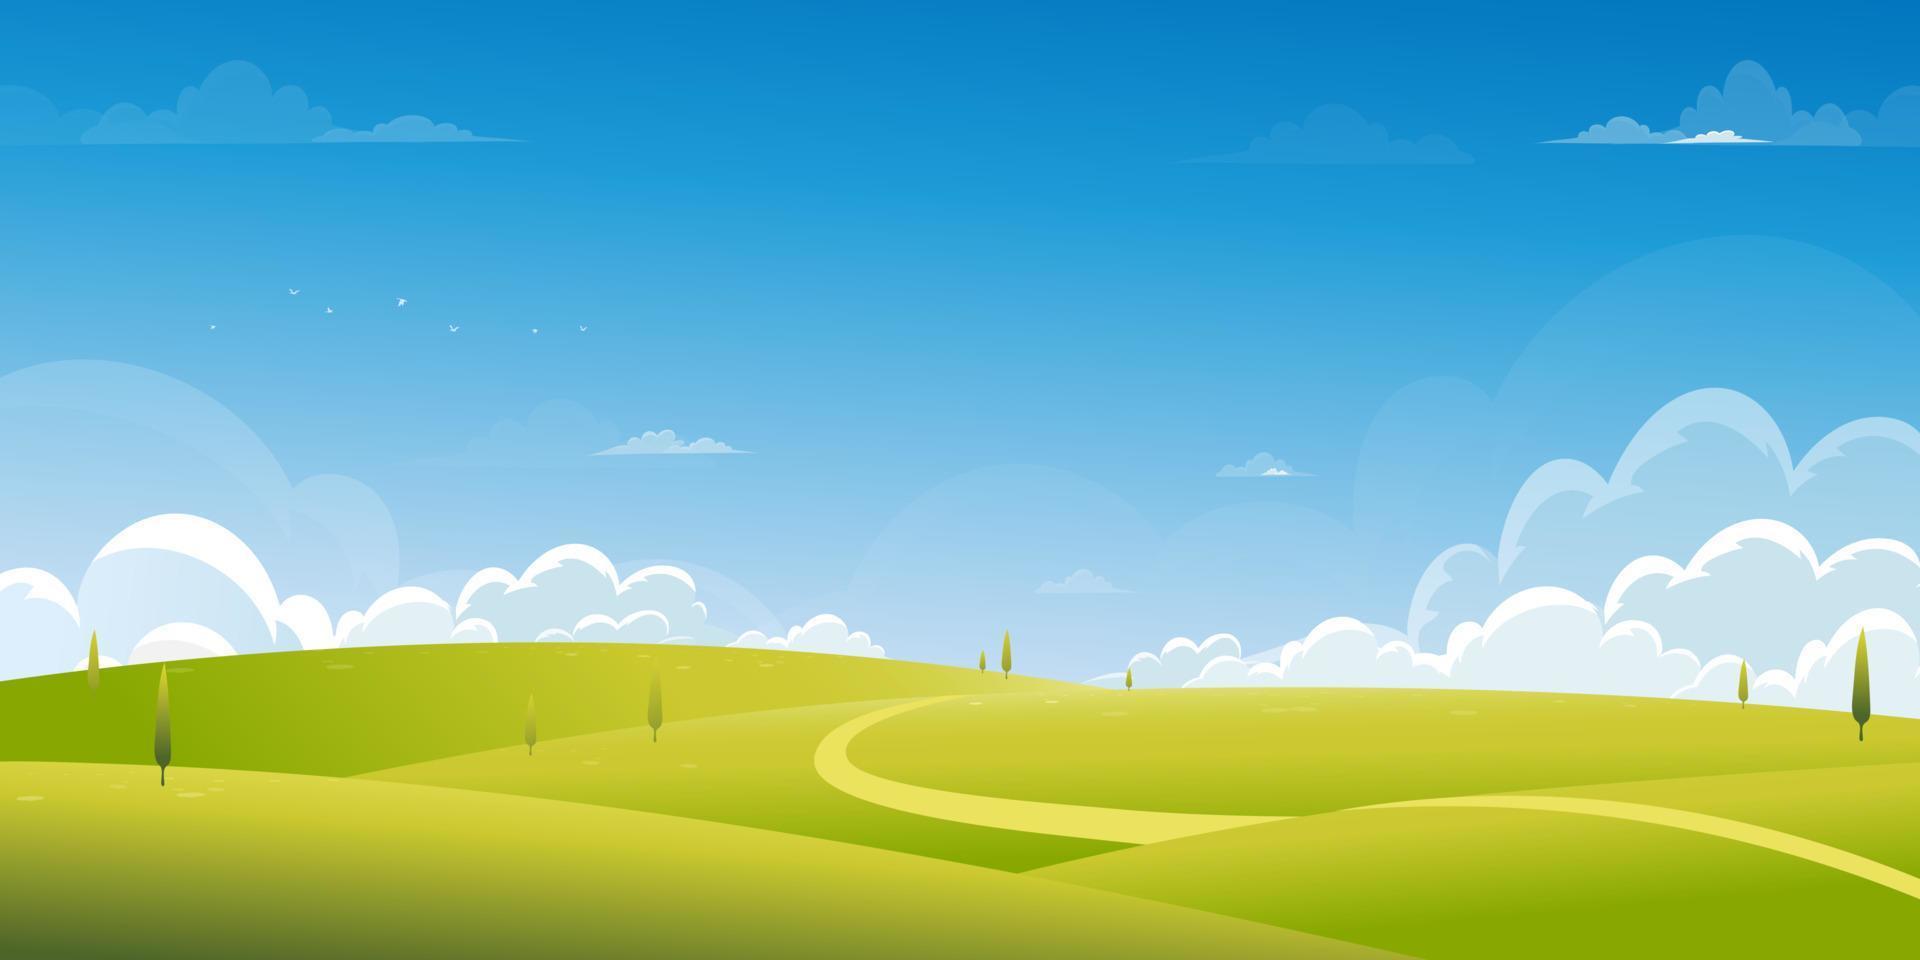 fond de printemps avec paysage de champ d'herbe verte avec montagne, ciel bleu et nuages, nature rurale panoramique d'été avec herbe sur la colline. bannière de fond d'illustration vectorielle de dessin animé pour pâques vecteur